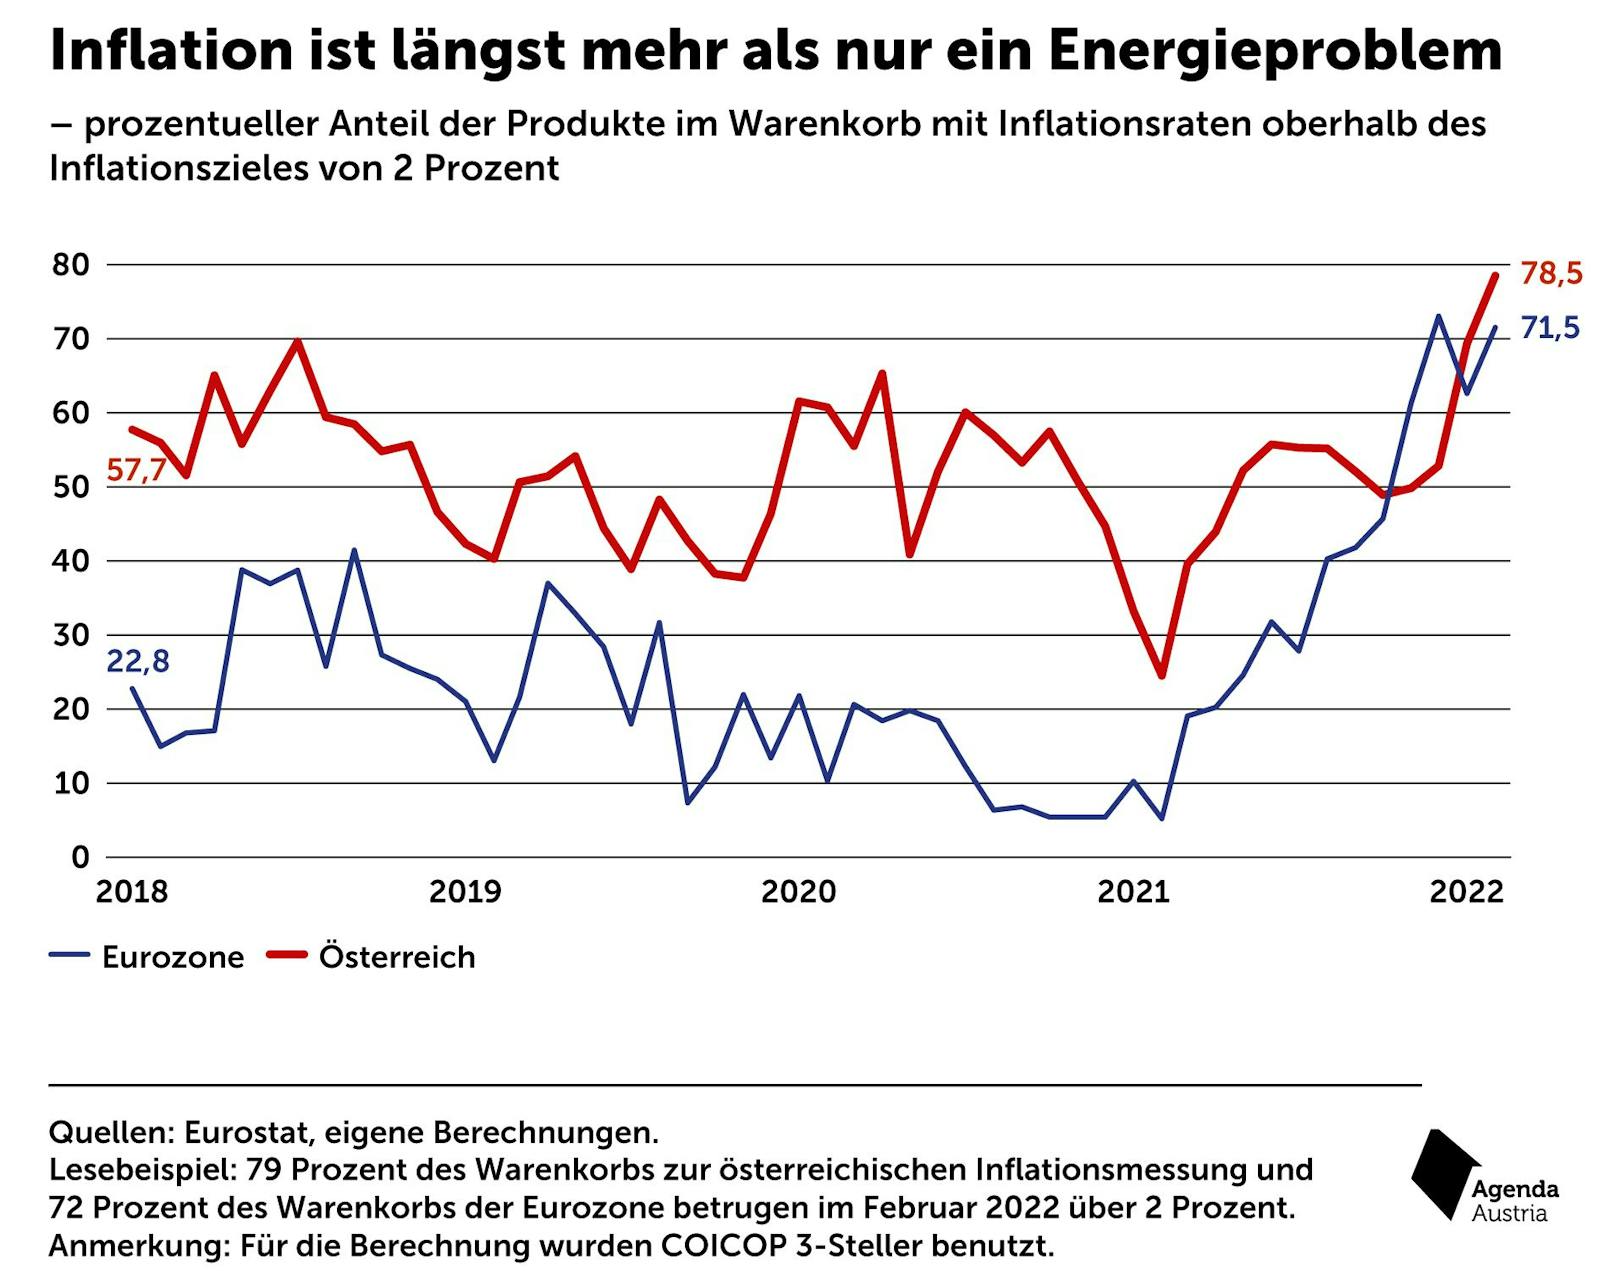 Agenda Austria: "Inflation ist längst mehr als nur ein Energieproblem"